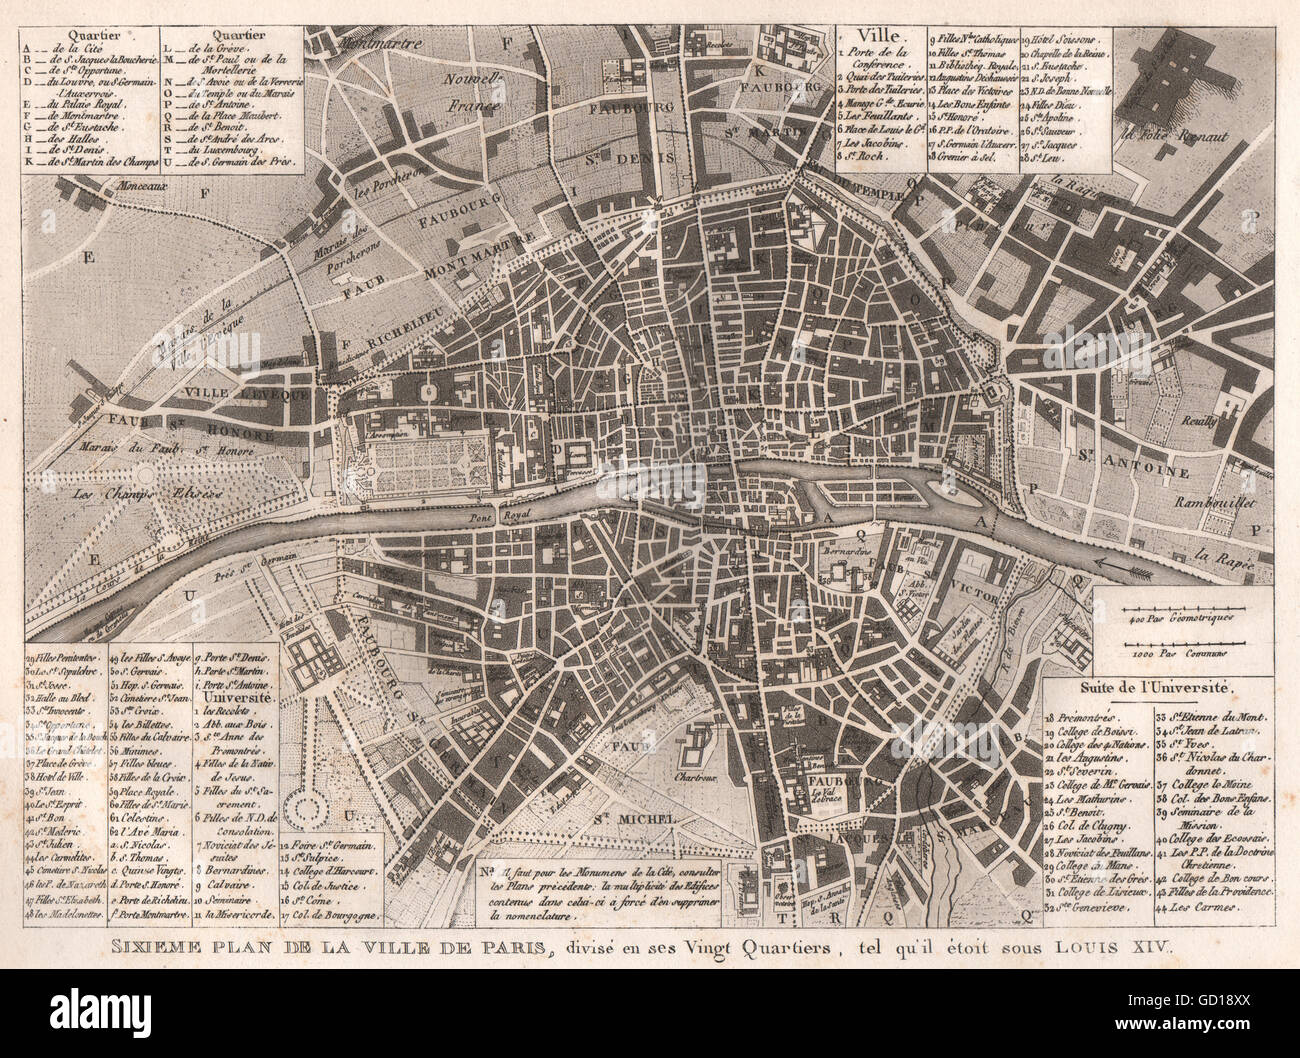 VILLE DE PARIS c1715: Divisé en 20 quartiers sous Louis XIV. City plan, 1808 map Stock Photo